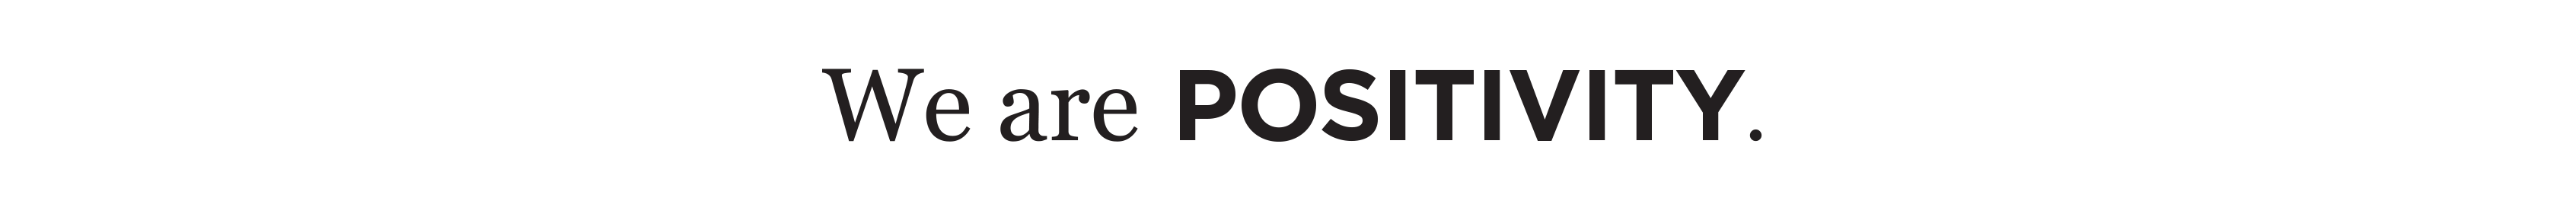 Positivity Branding's profile banner